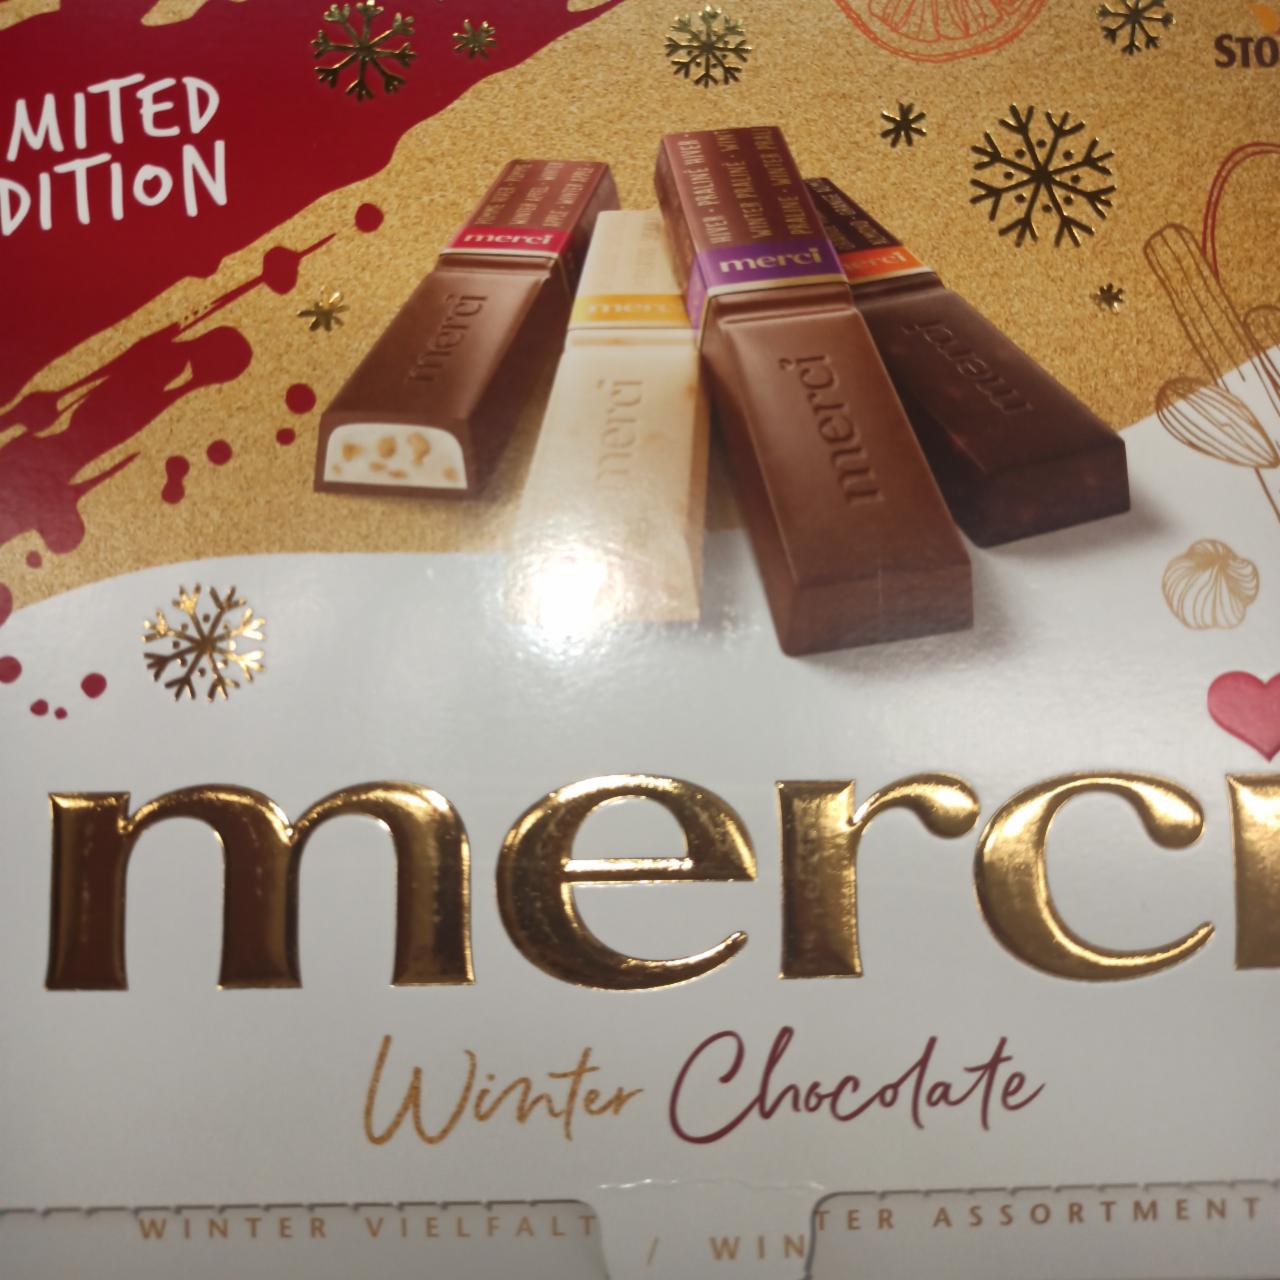 Zdjęcia - merci Winter Chocolate 4 rodzaje specjałów czekoladowych 250 g